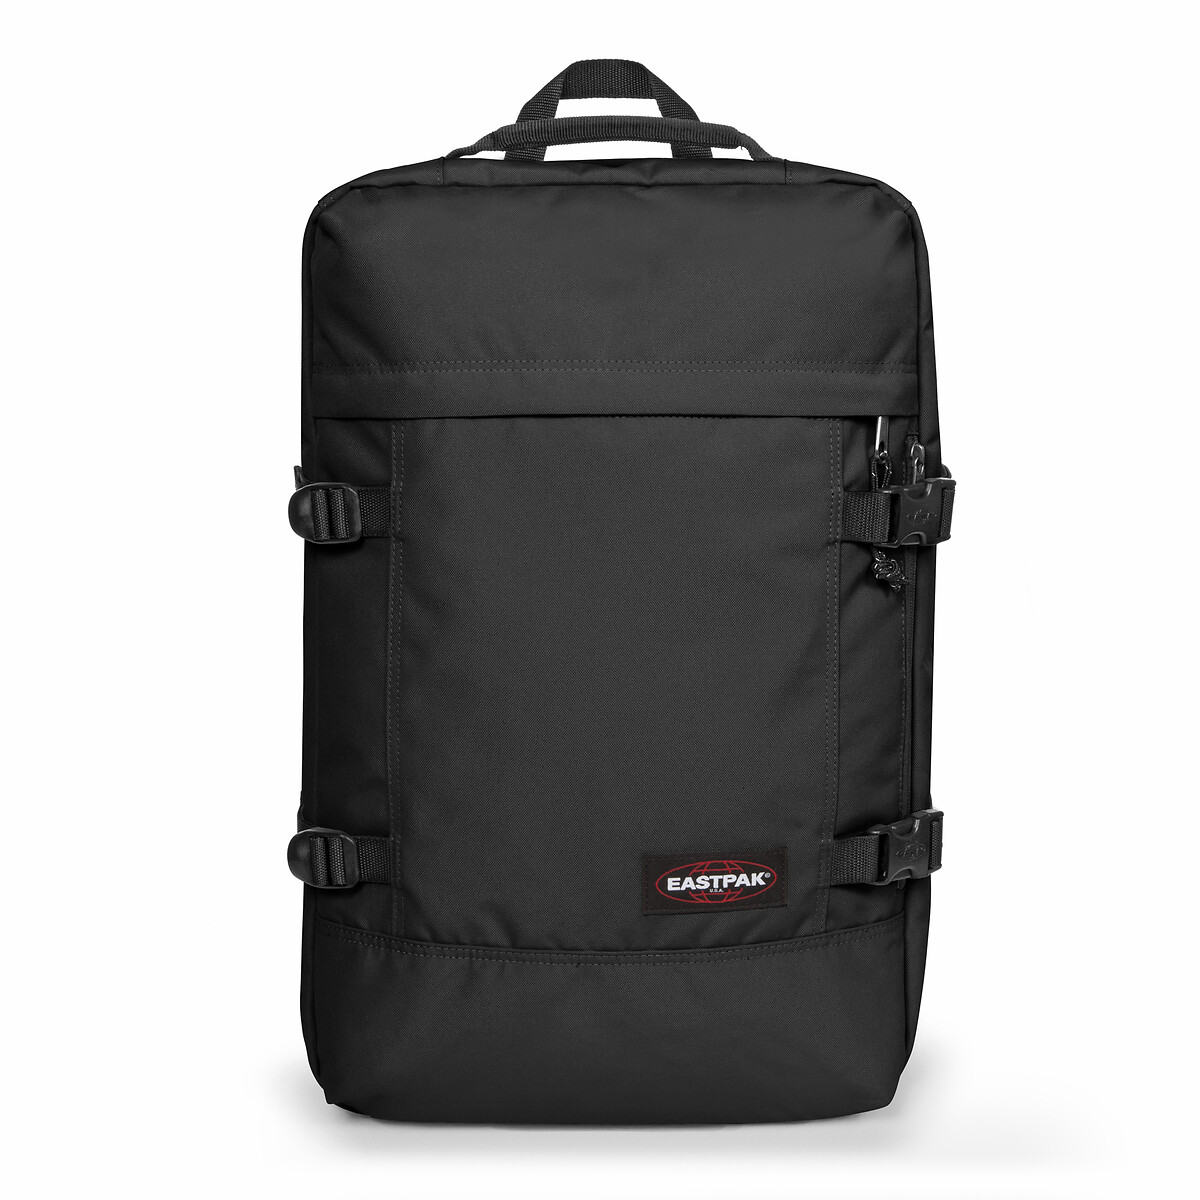 Travelpack Duffle Bag